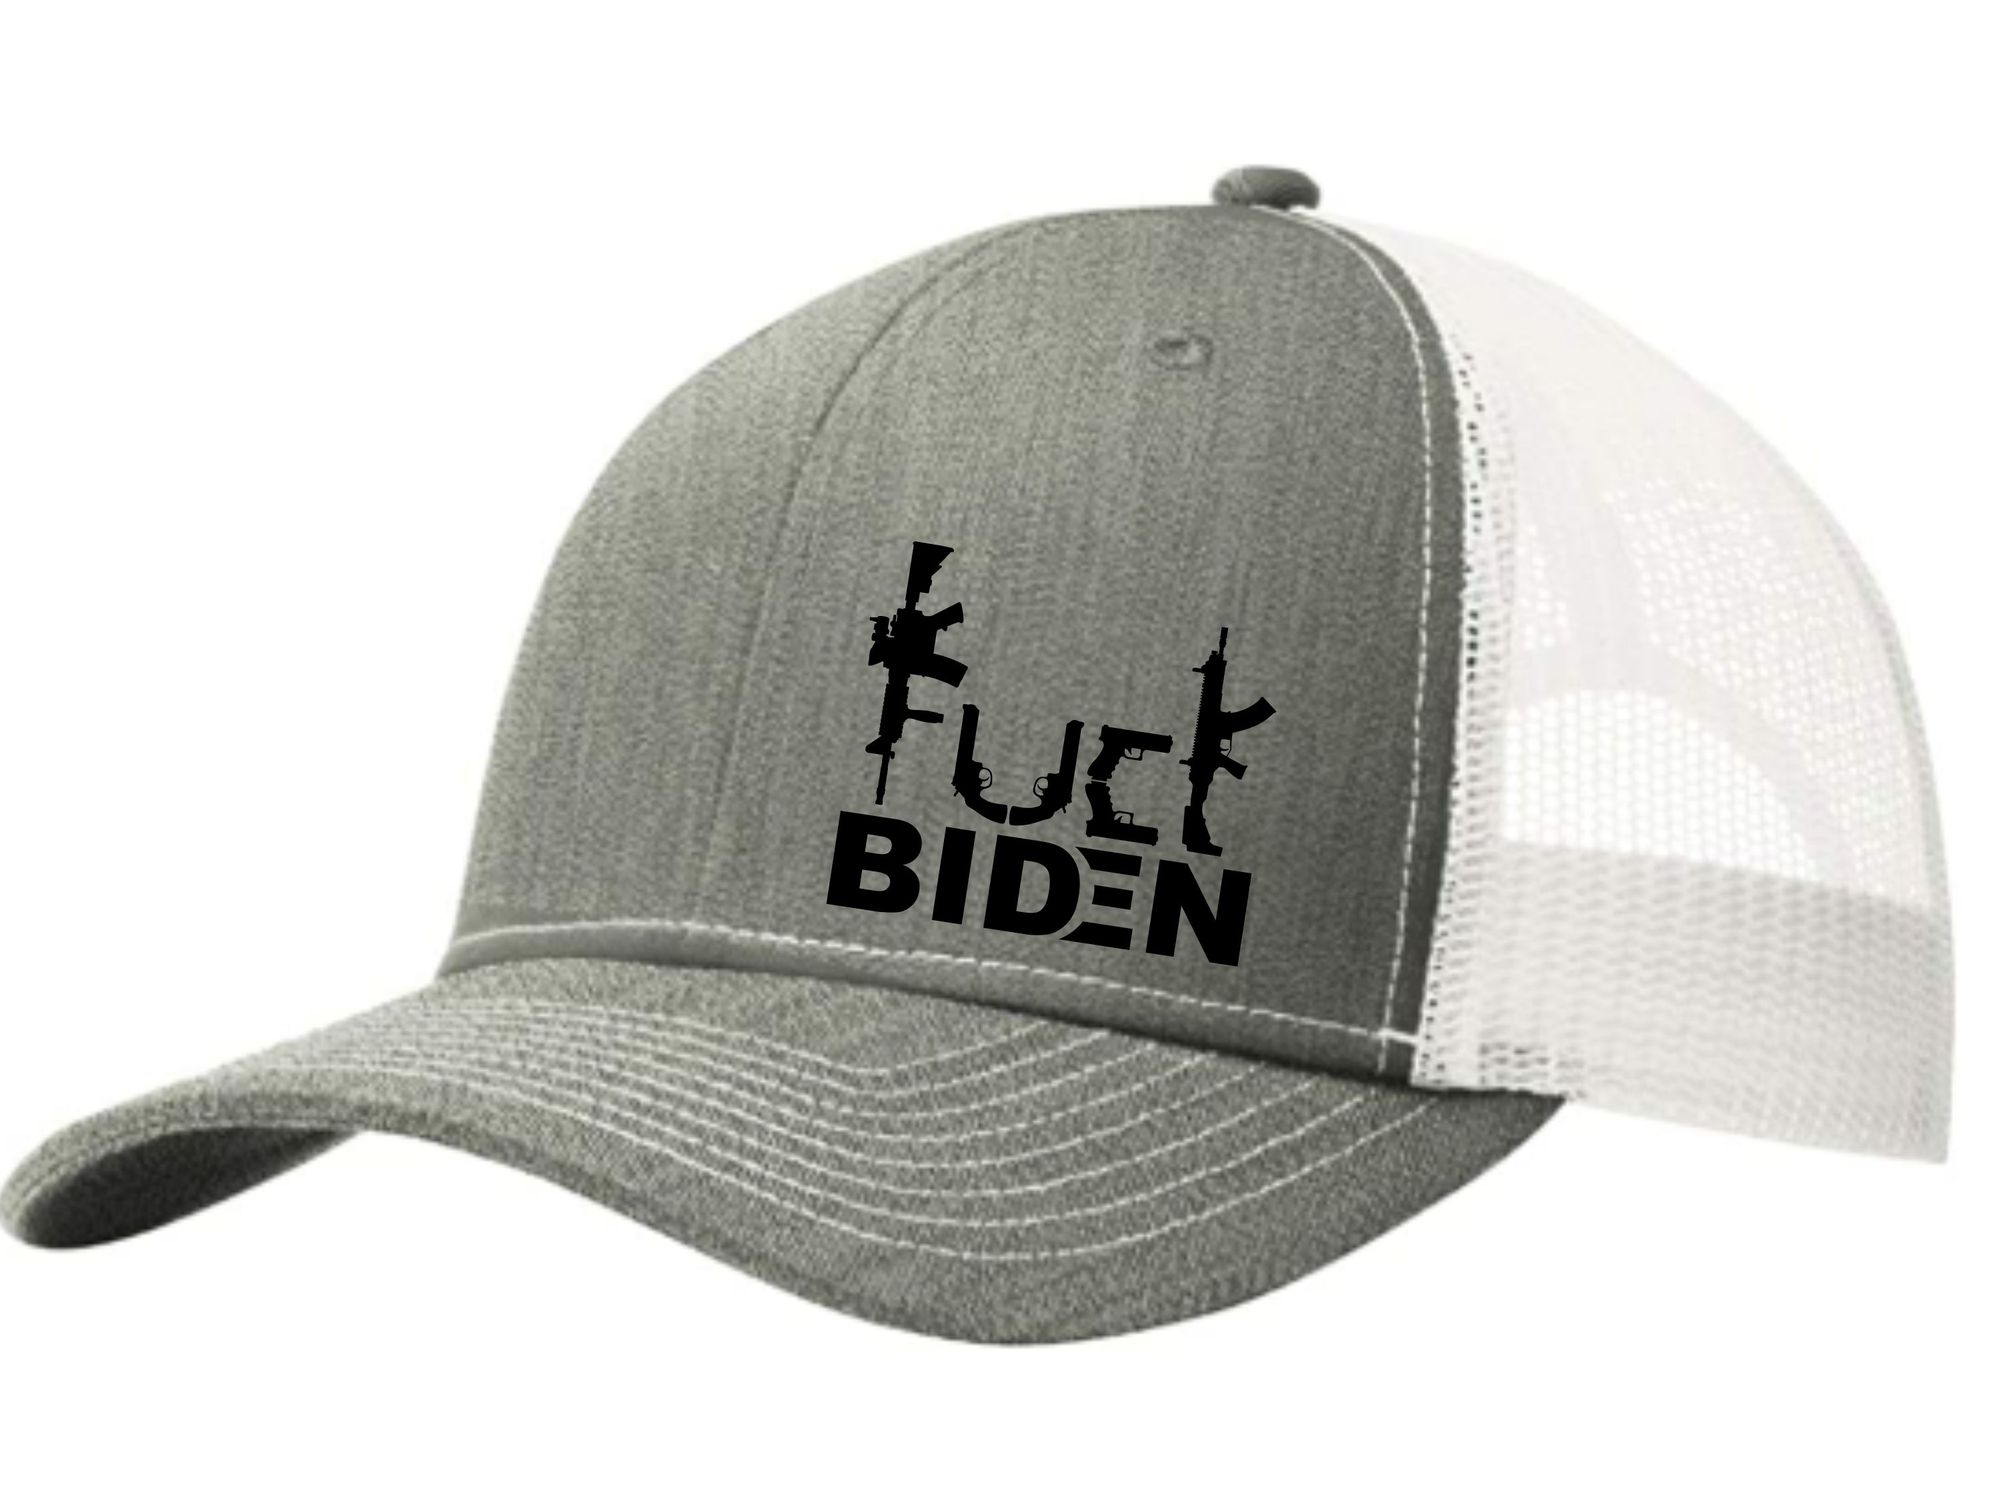 Guns Fuck Biden trucker cap 4